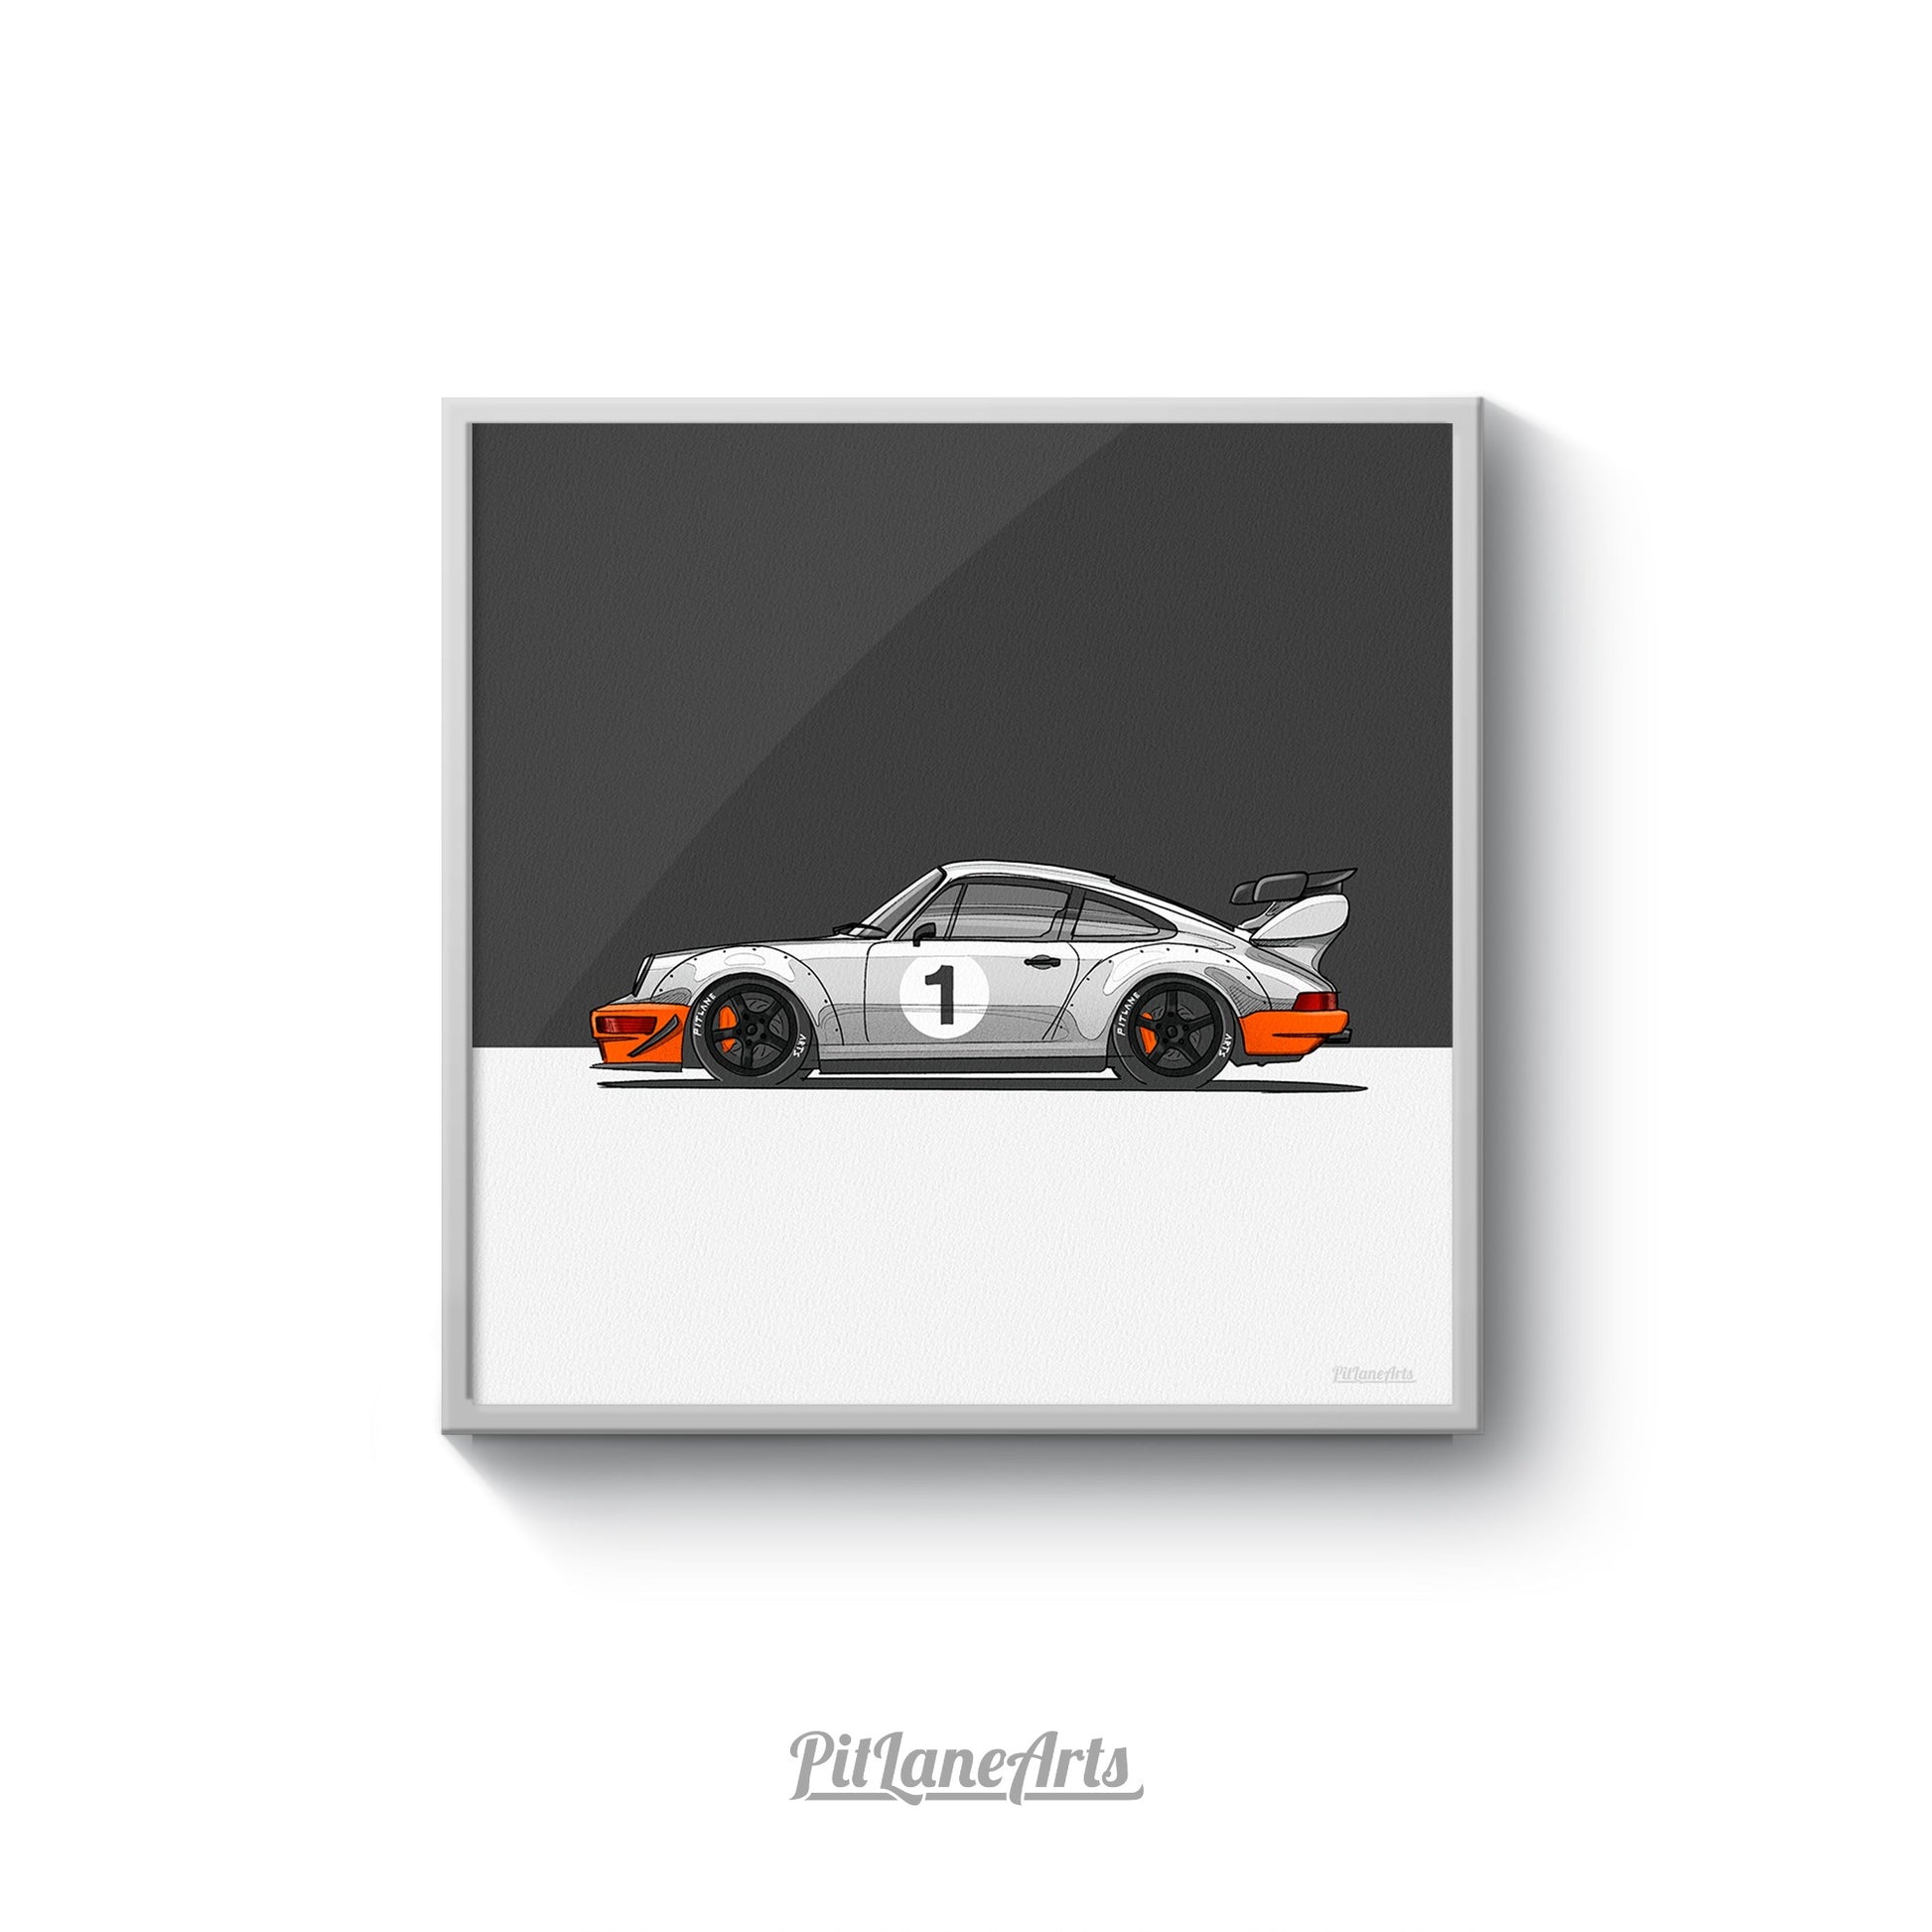 Porsche 911 street racer print